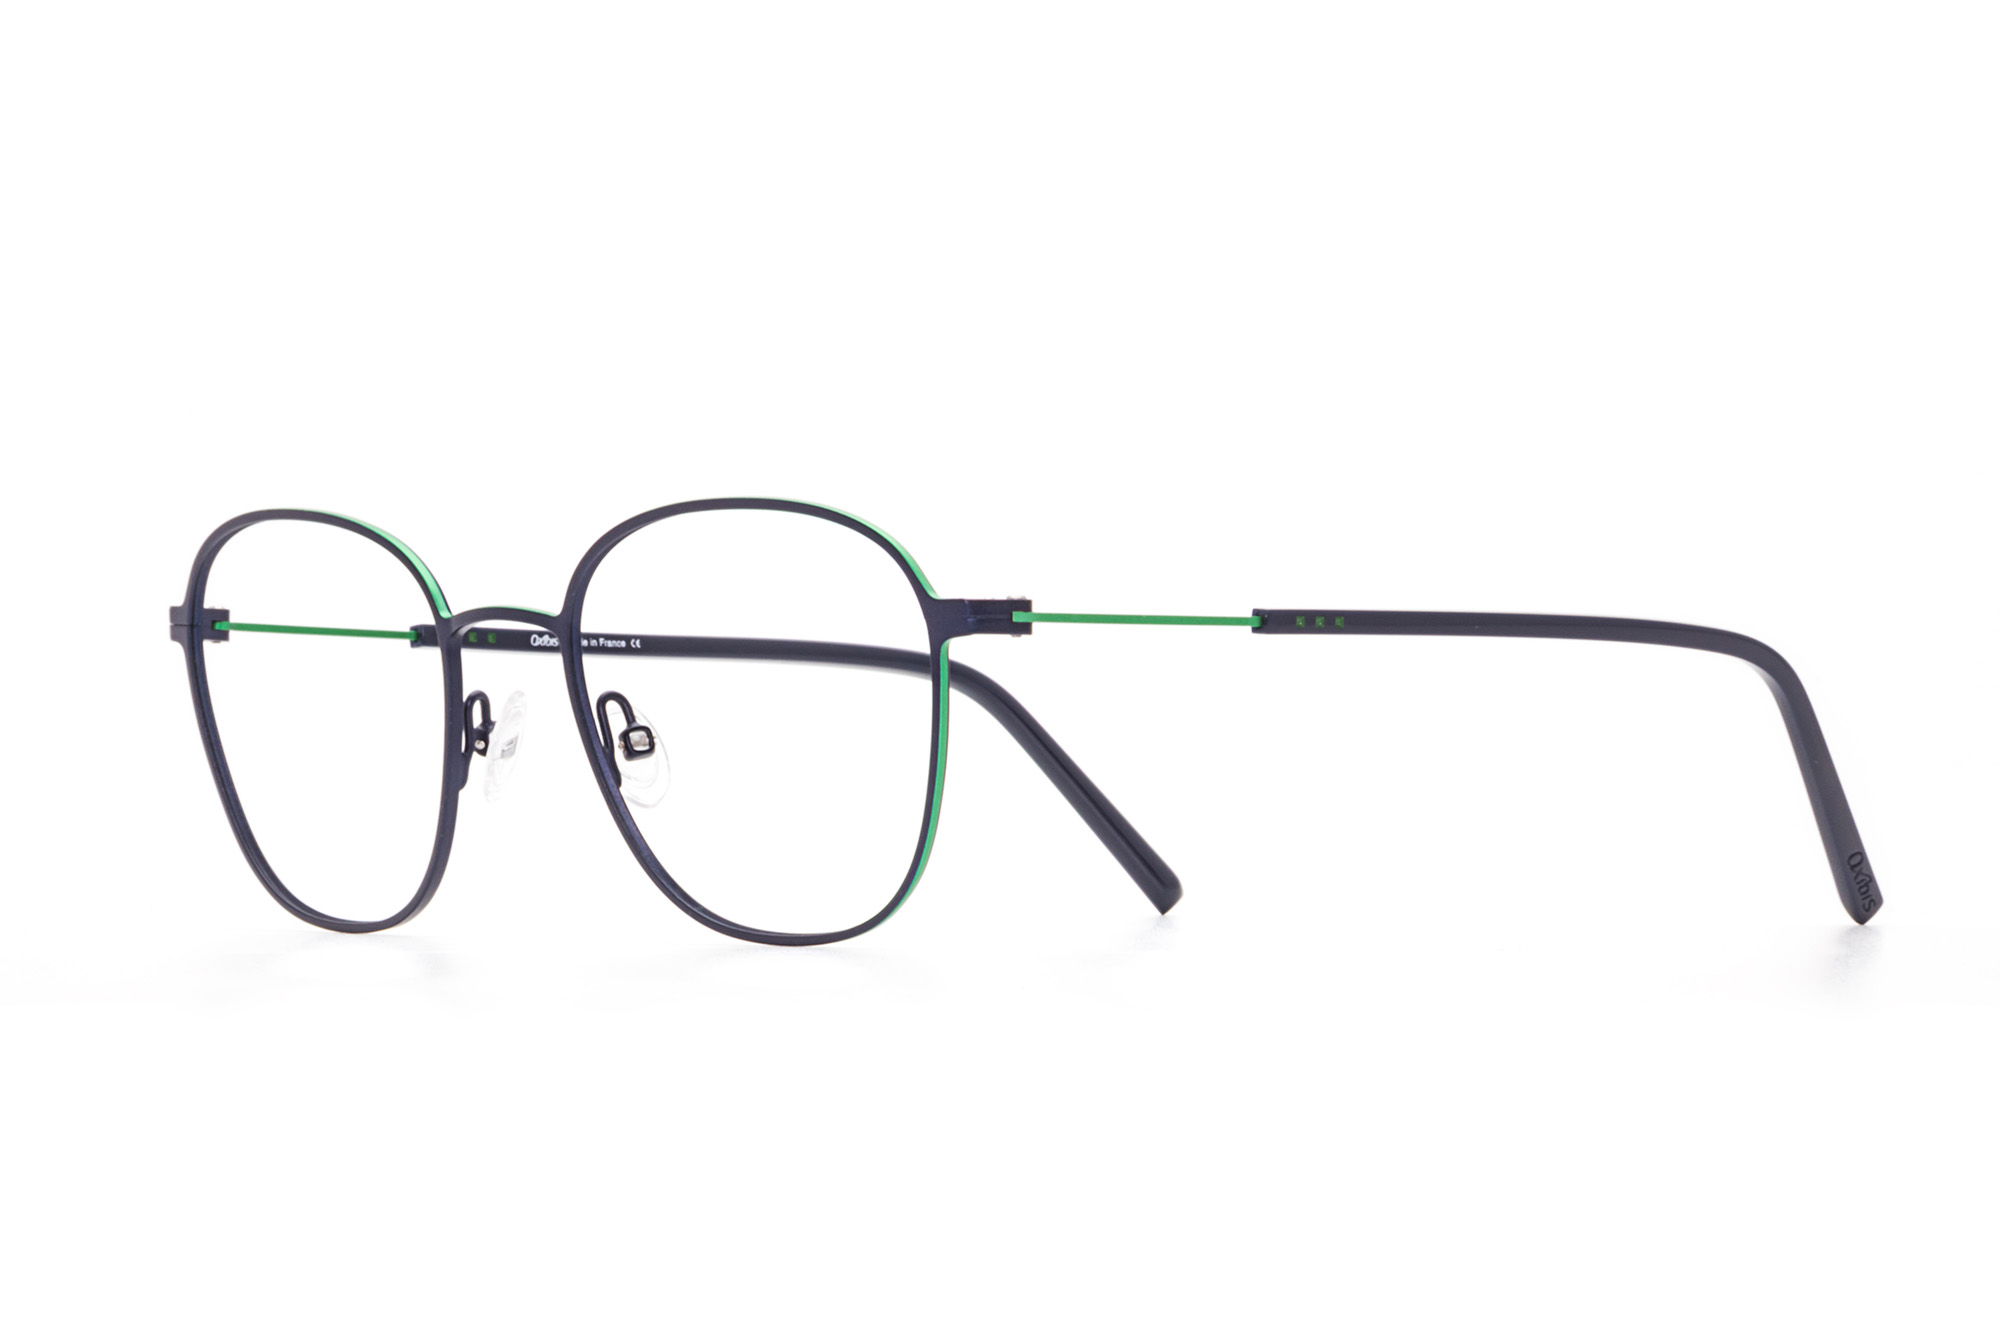 Oxibis Boost 2 BO2C1 50 orta ekartman lacivert ve yeşil renkli dikdörtgen ve yuvarlak model numaralı erkek optik gözlük çerçevesi